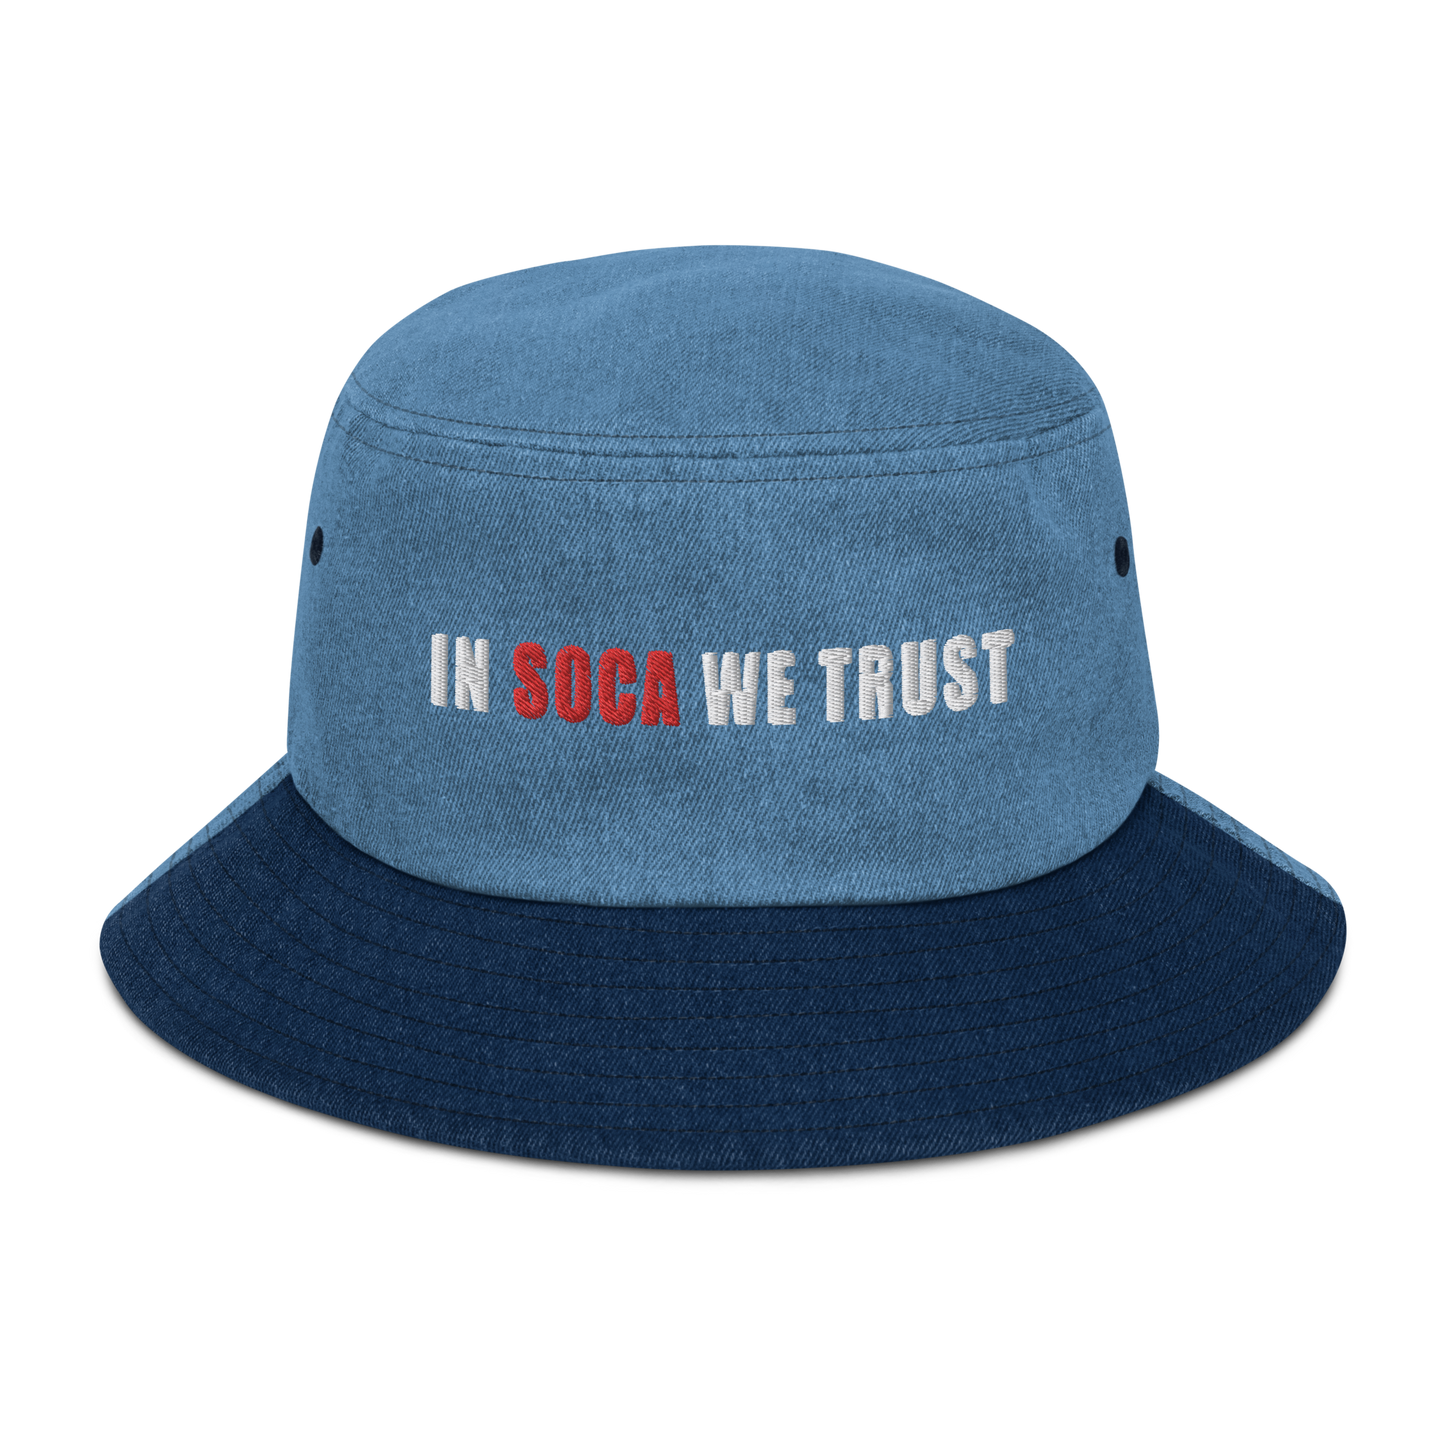 In Soca We Trust Denim bucket hat